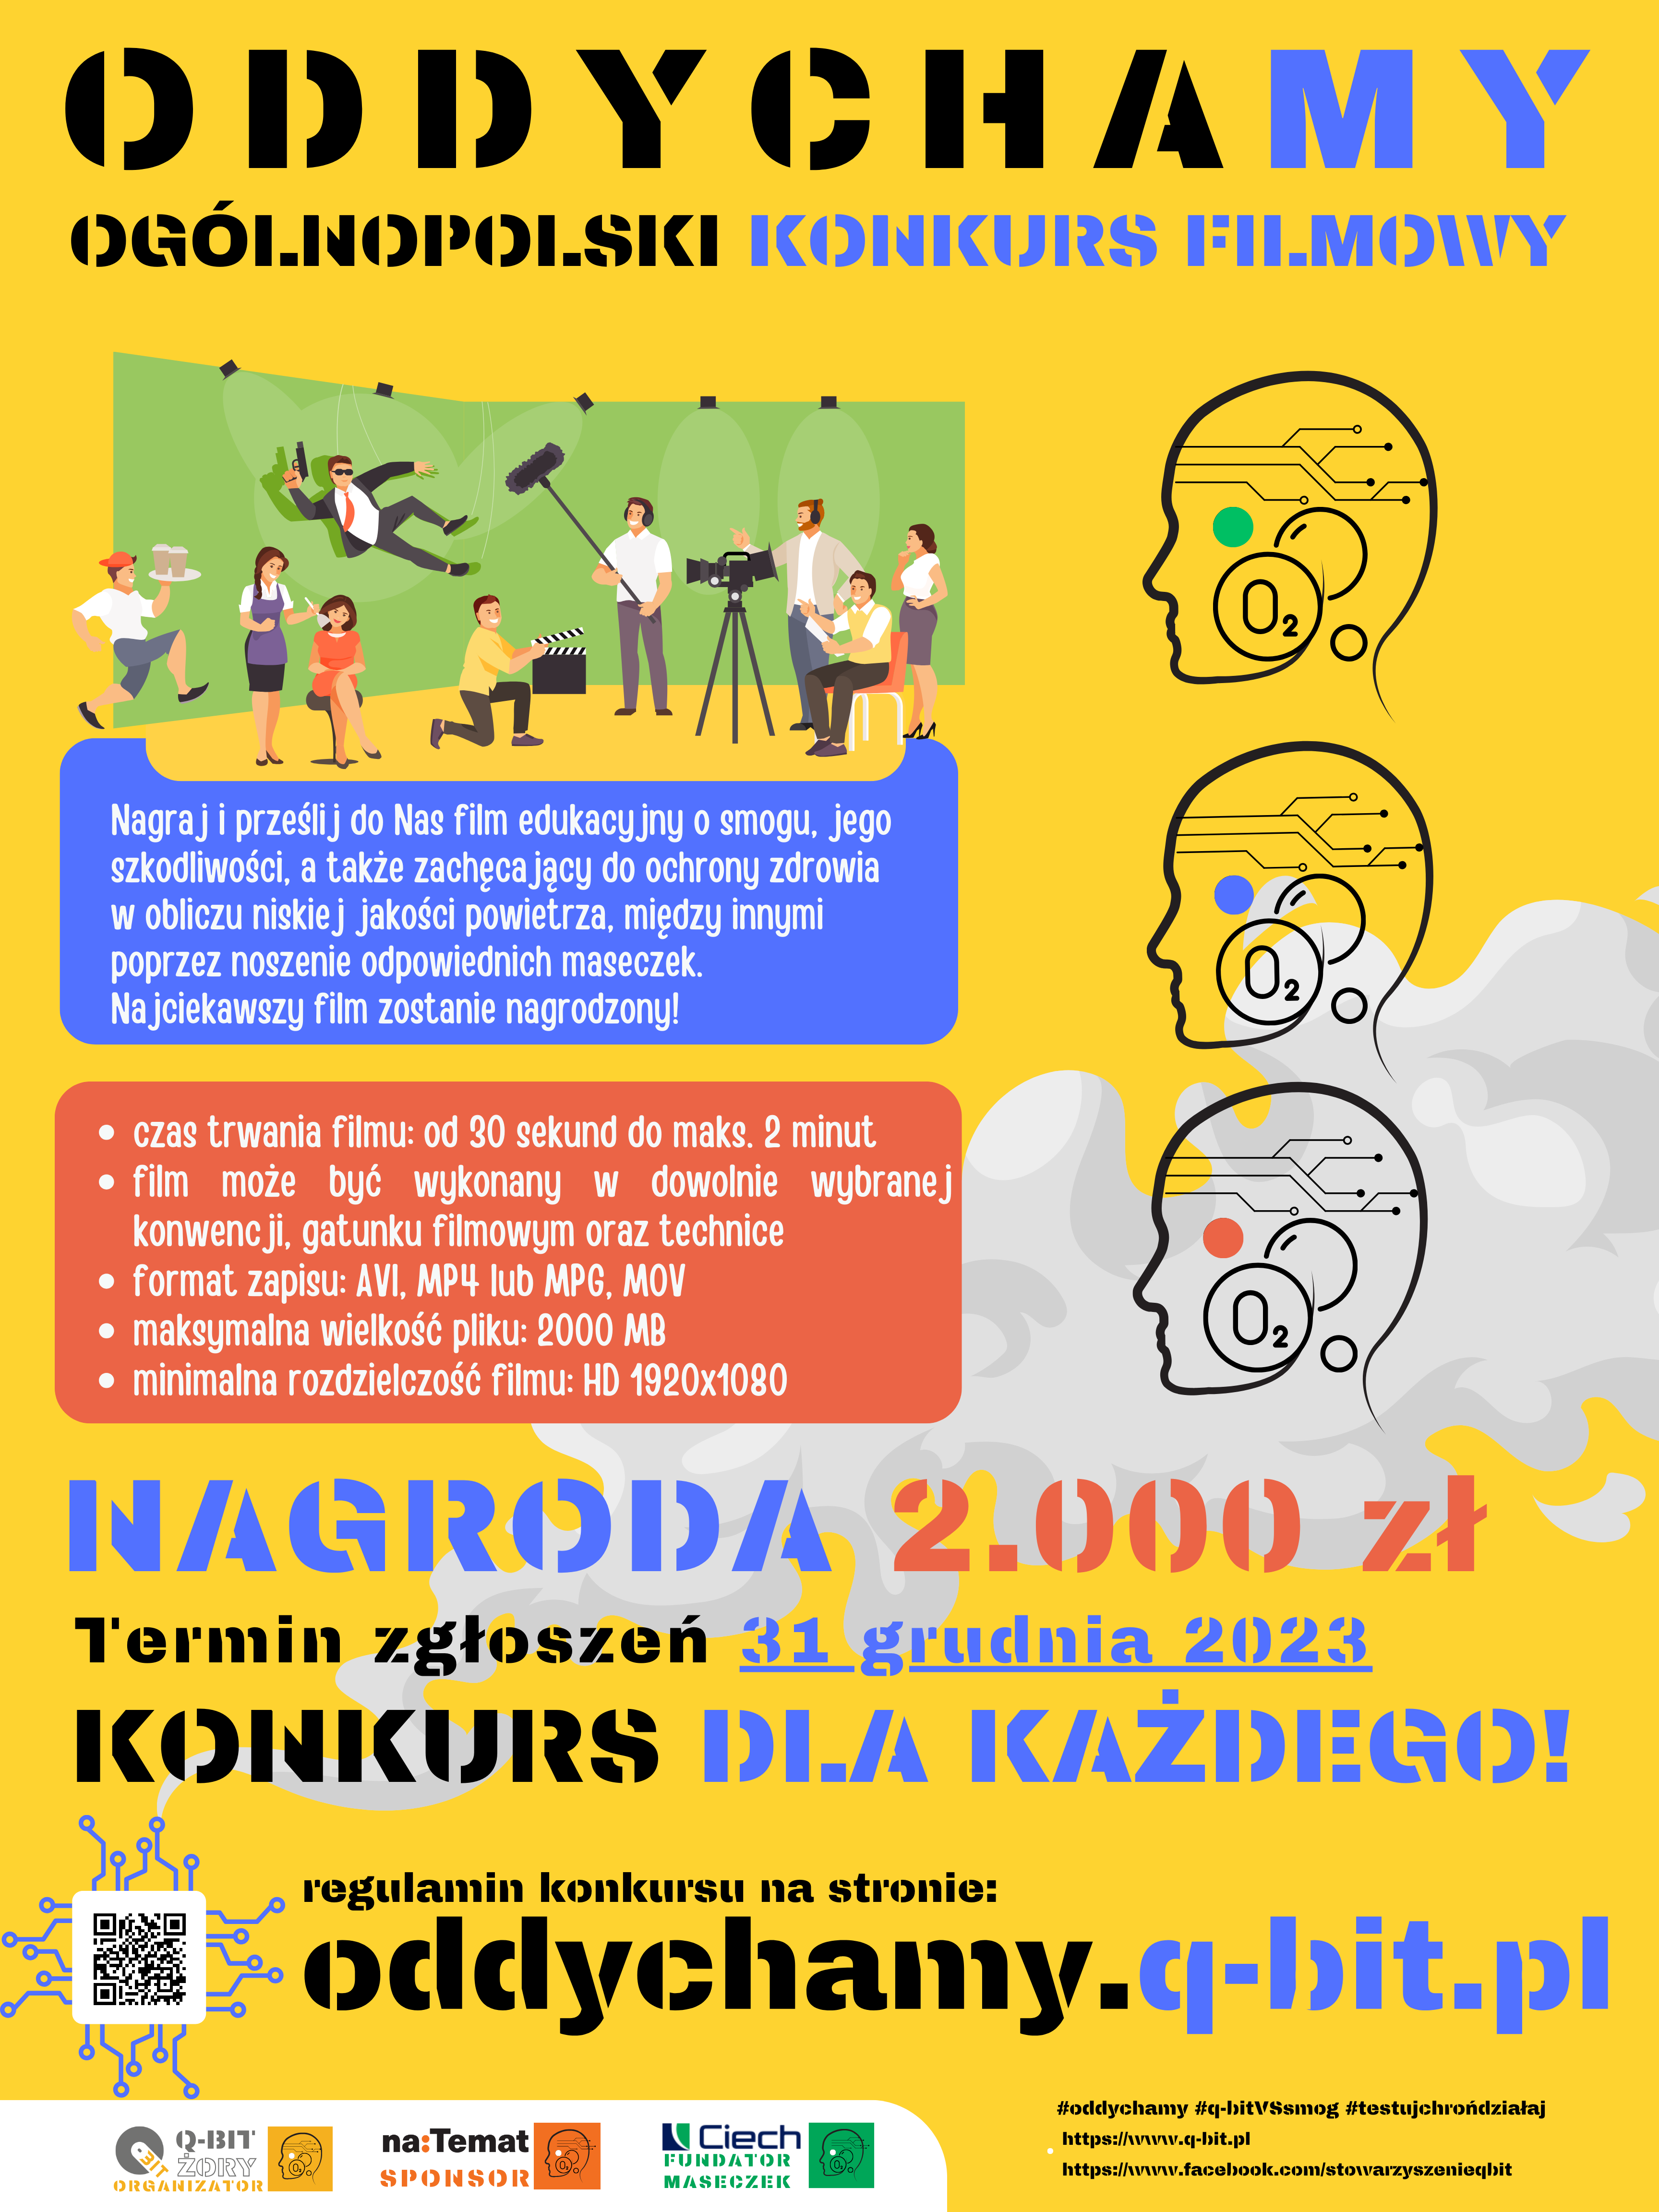 Plakat konkursowy Oddycham! - konkurs ogólnopolski na film